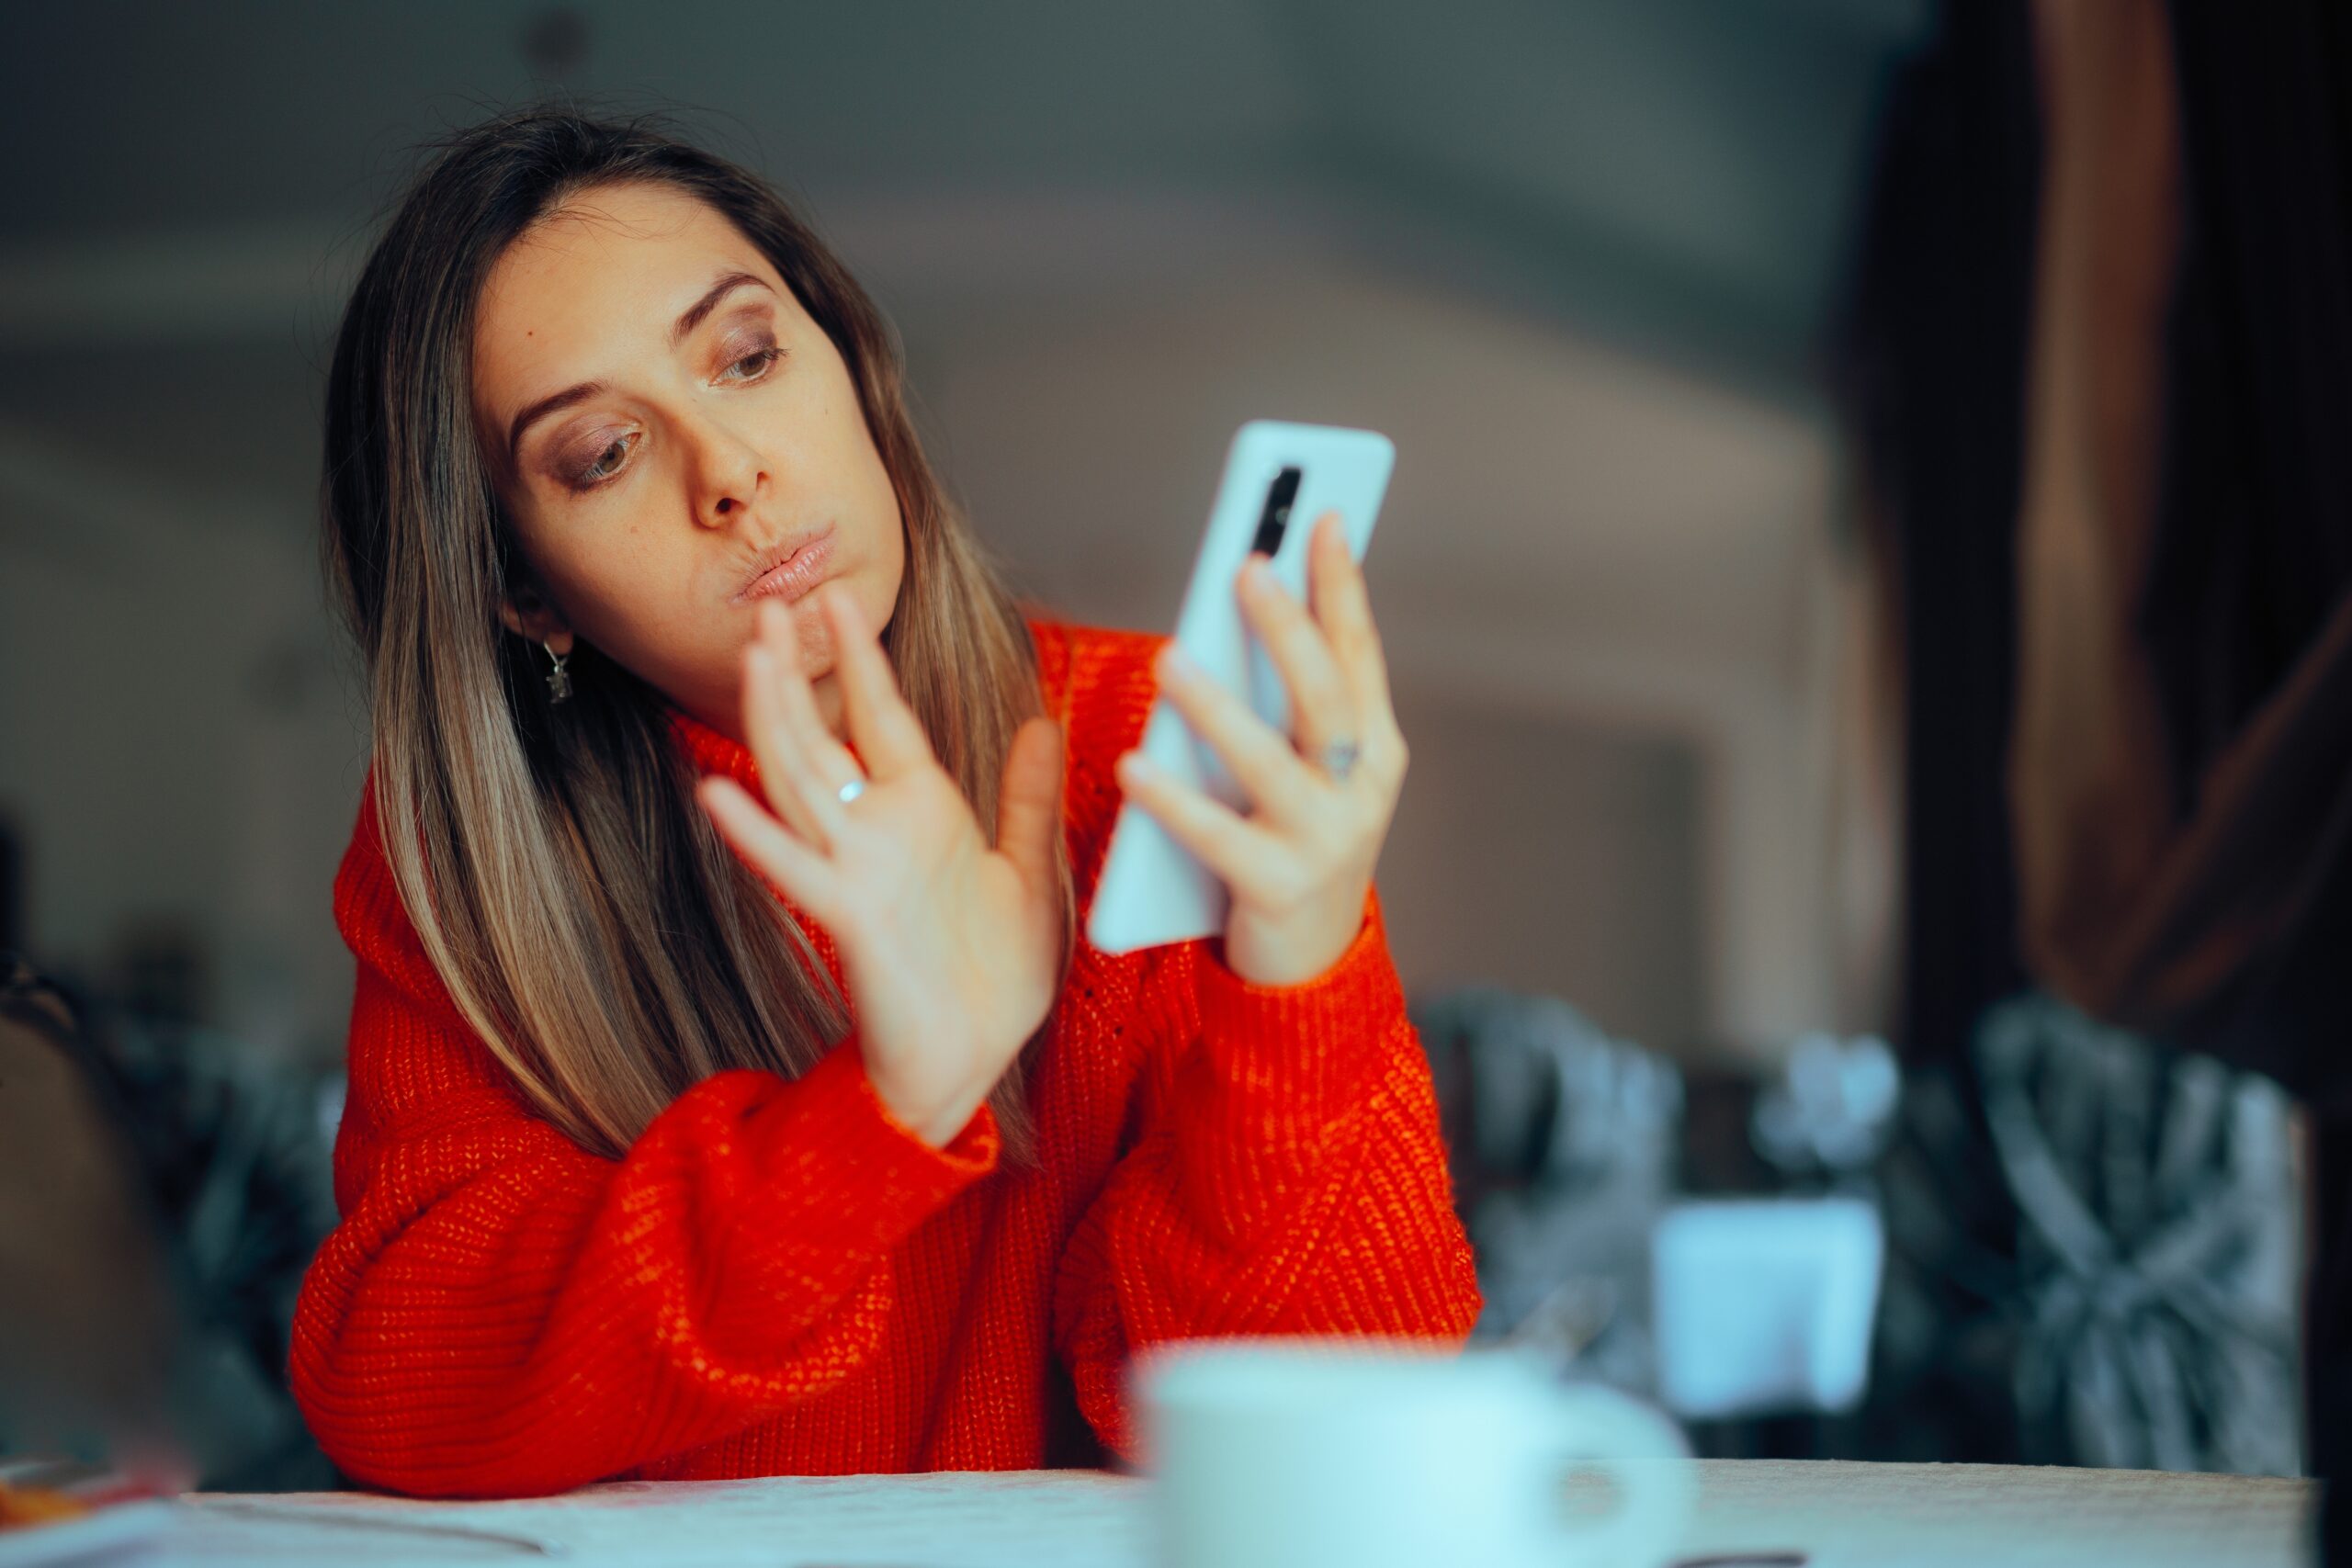 Kobieta w czerwonym swetrze, patrząca na telefon komórkowy i dotykająca swojej twarzy palcem wskazującym.